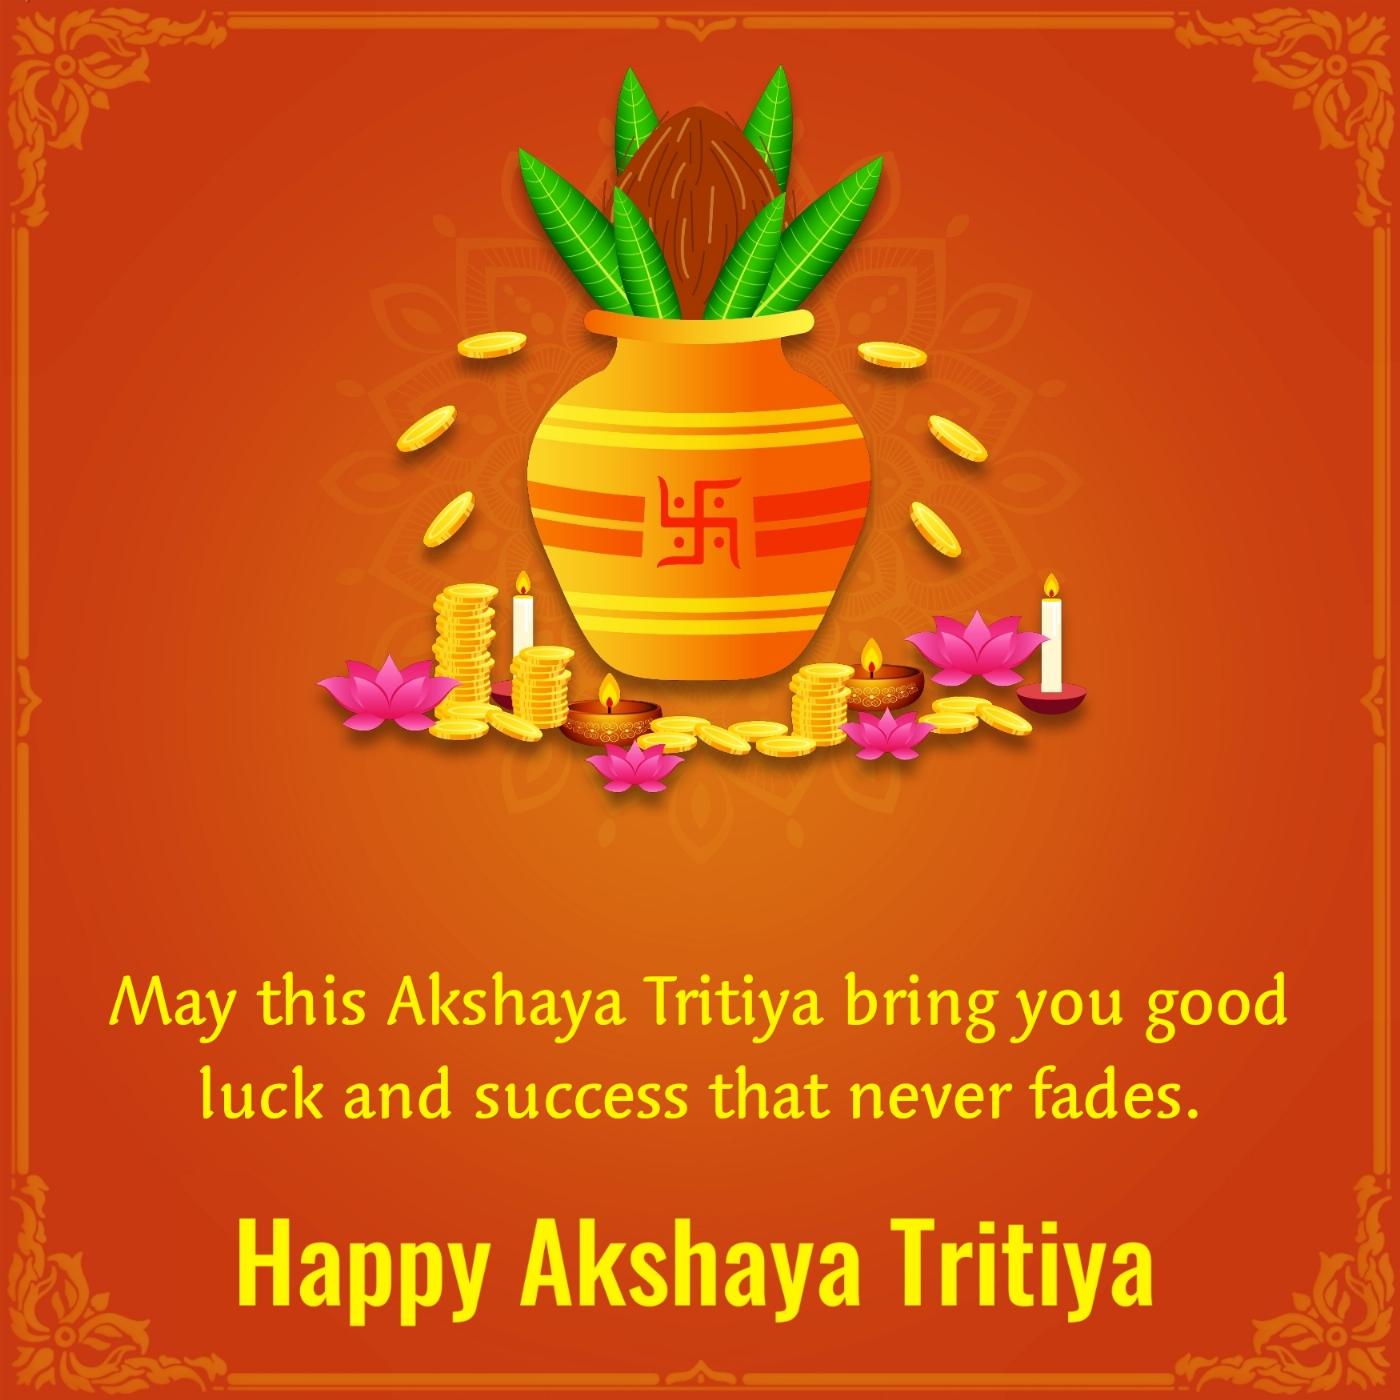 May this Akshaya Tritiya bring you good luck and success